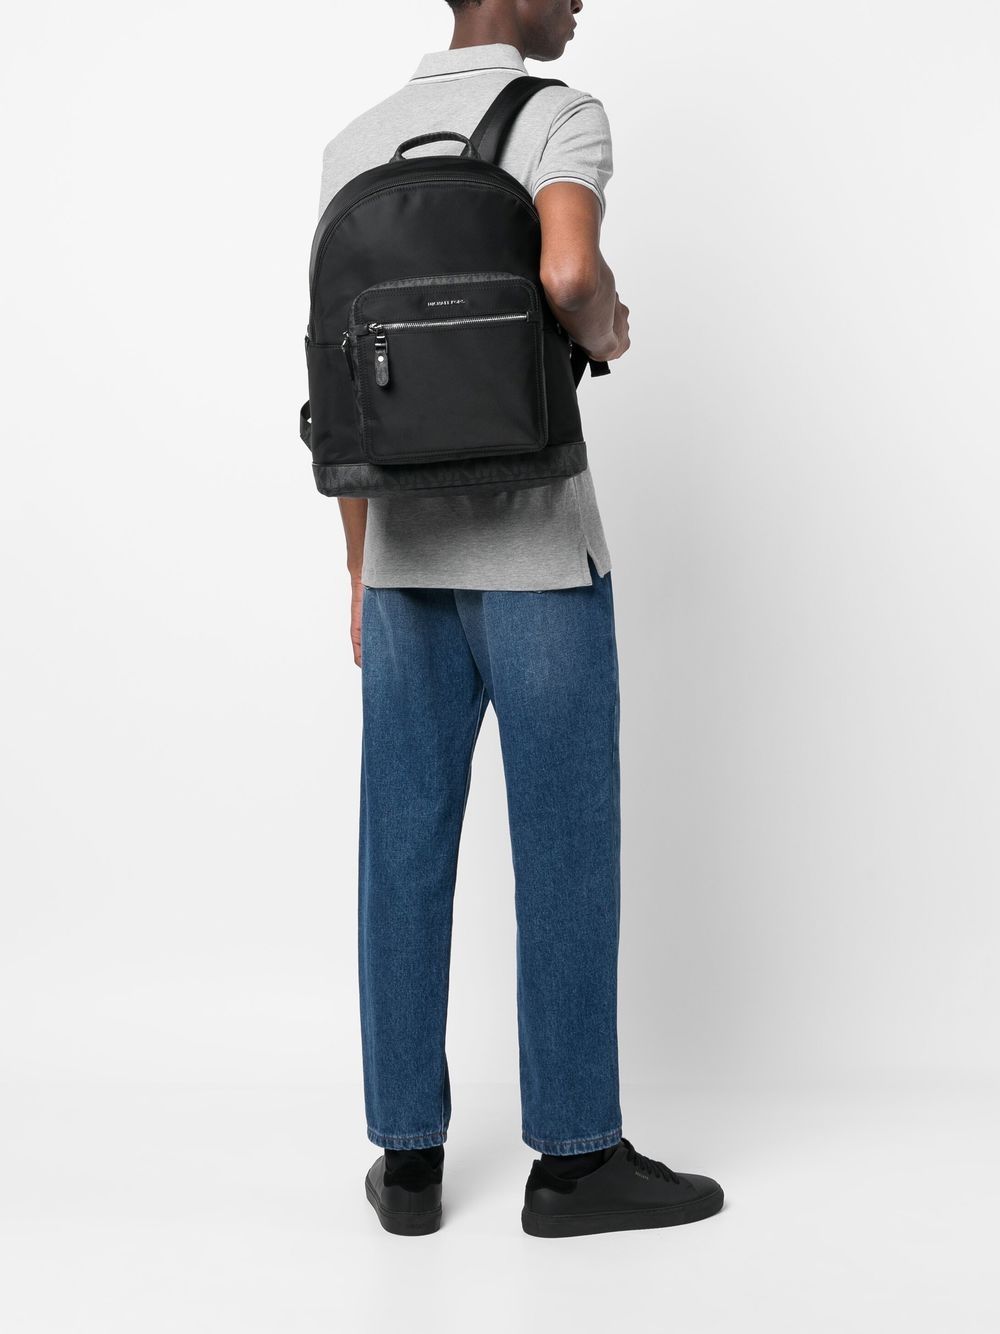 MICHAEL KORS Backpack Men's Scatter Logo Hudson Backpack navy travel  bag